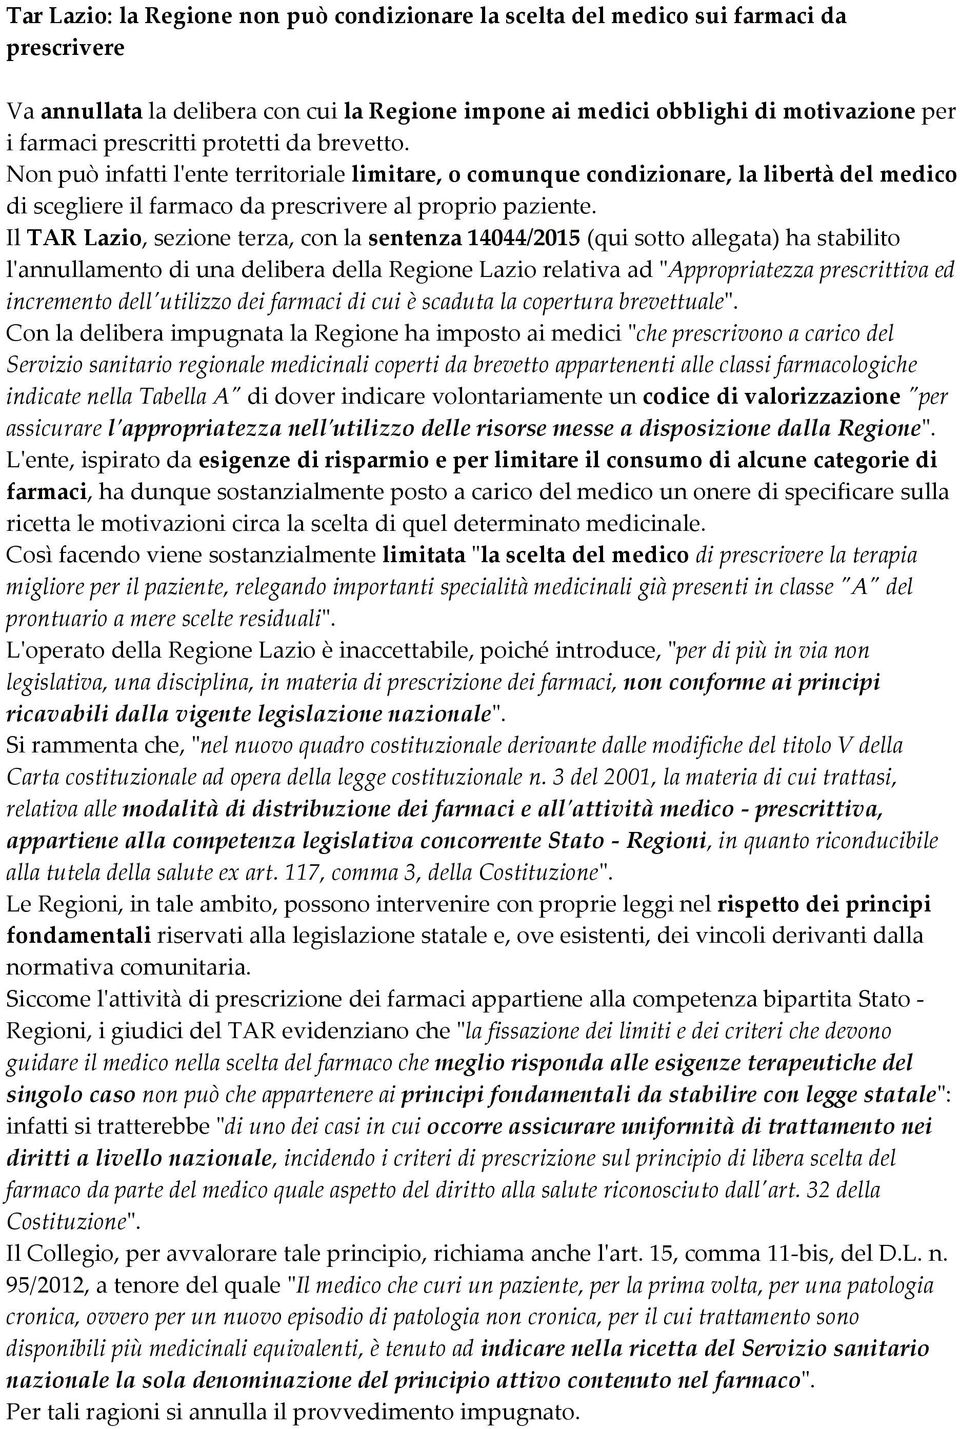 Il TAR Lazio, sezione terza, con la sentenza 14044/2015 (qui sotto allegata) ha stabilito l'annullamento di una delibera della Regione Lazio relativa ad "Appropriatezza prescrittiva ed incremento